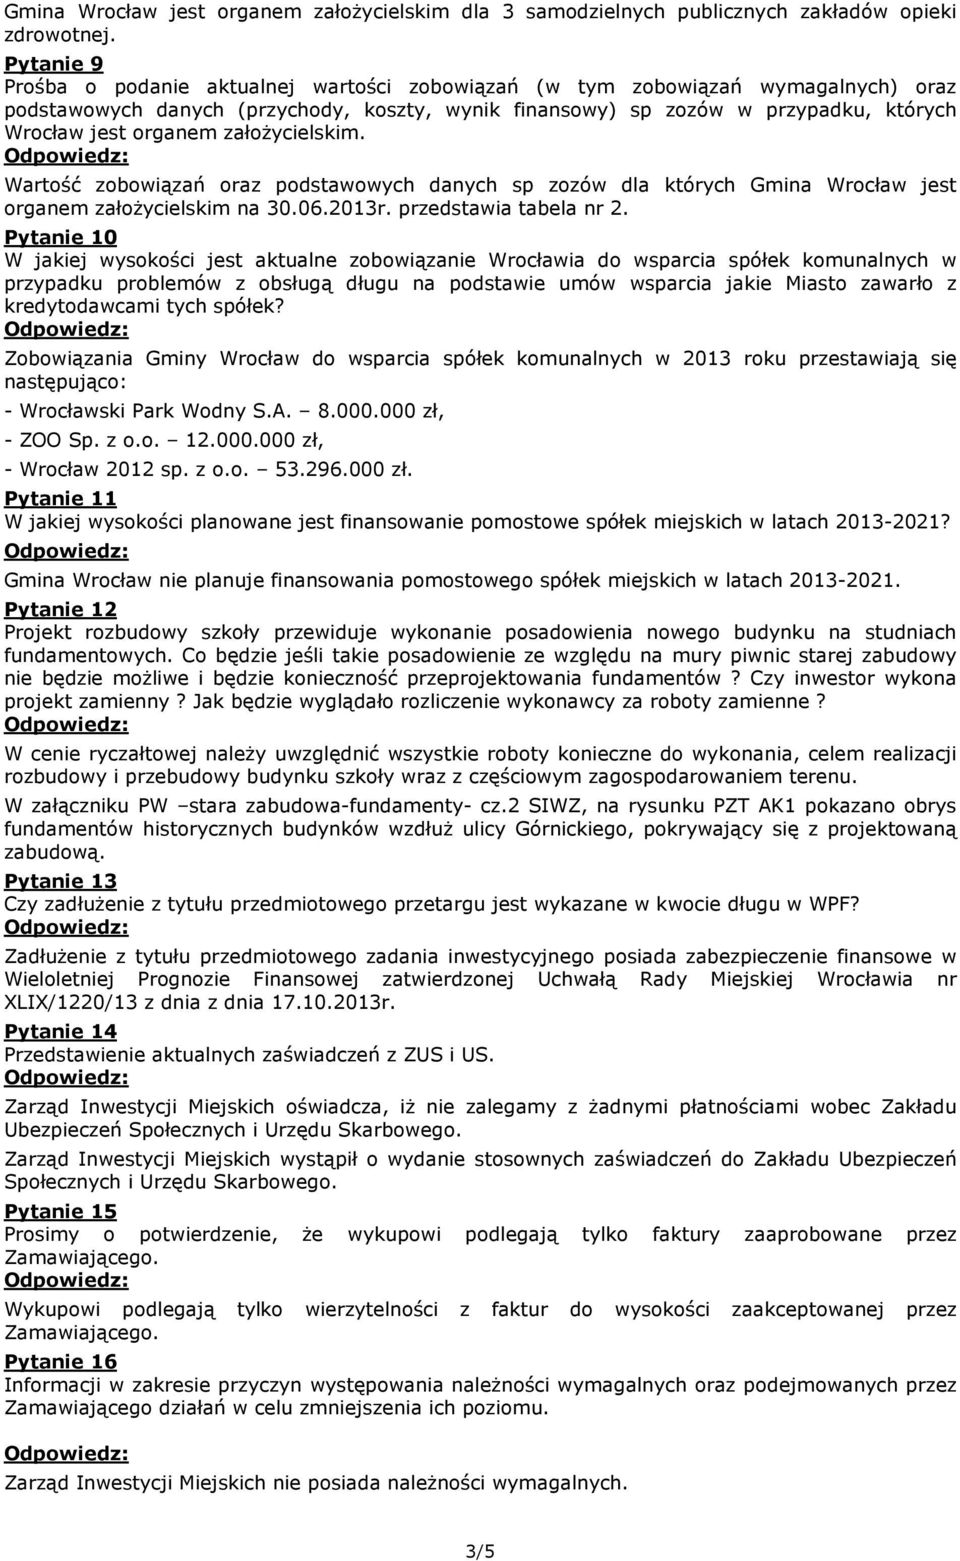 organem załoŝycielskim. Wartość zobowiązań oraz podstawowych danych sp zozów dla których Gmina Wrocław jest organem załoŝycielskim na 30.06.2013r. przedstawia tabela nr 2.